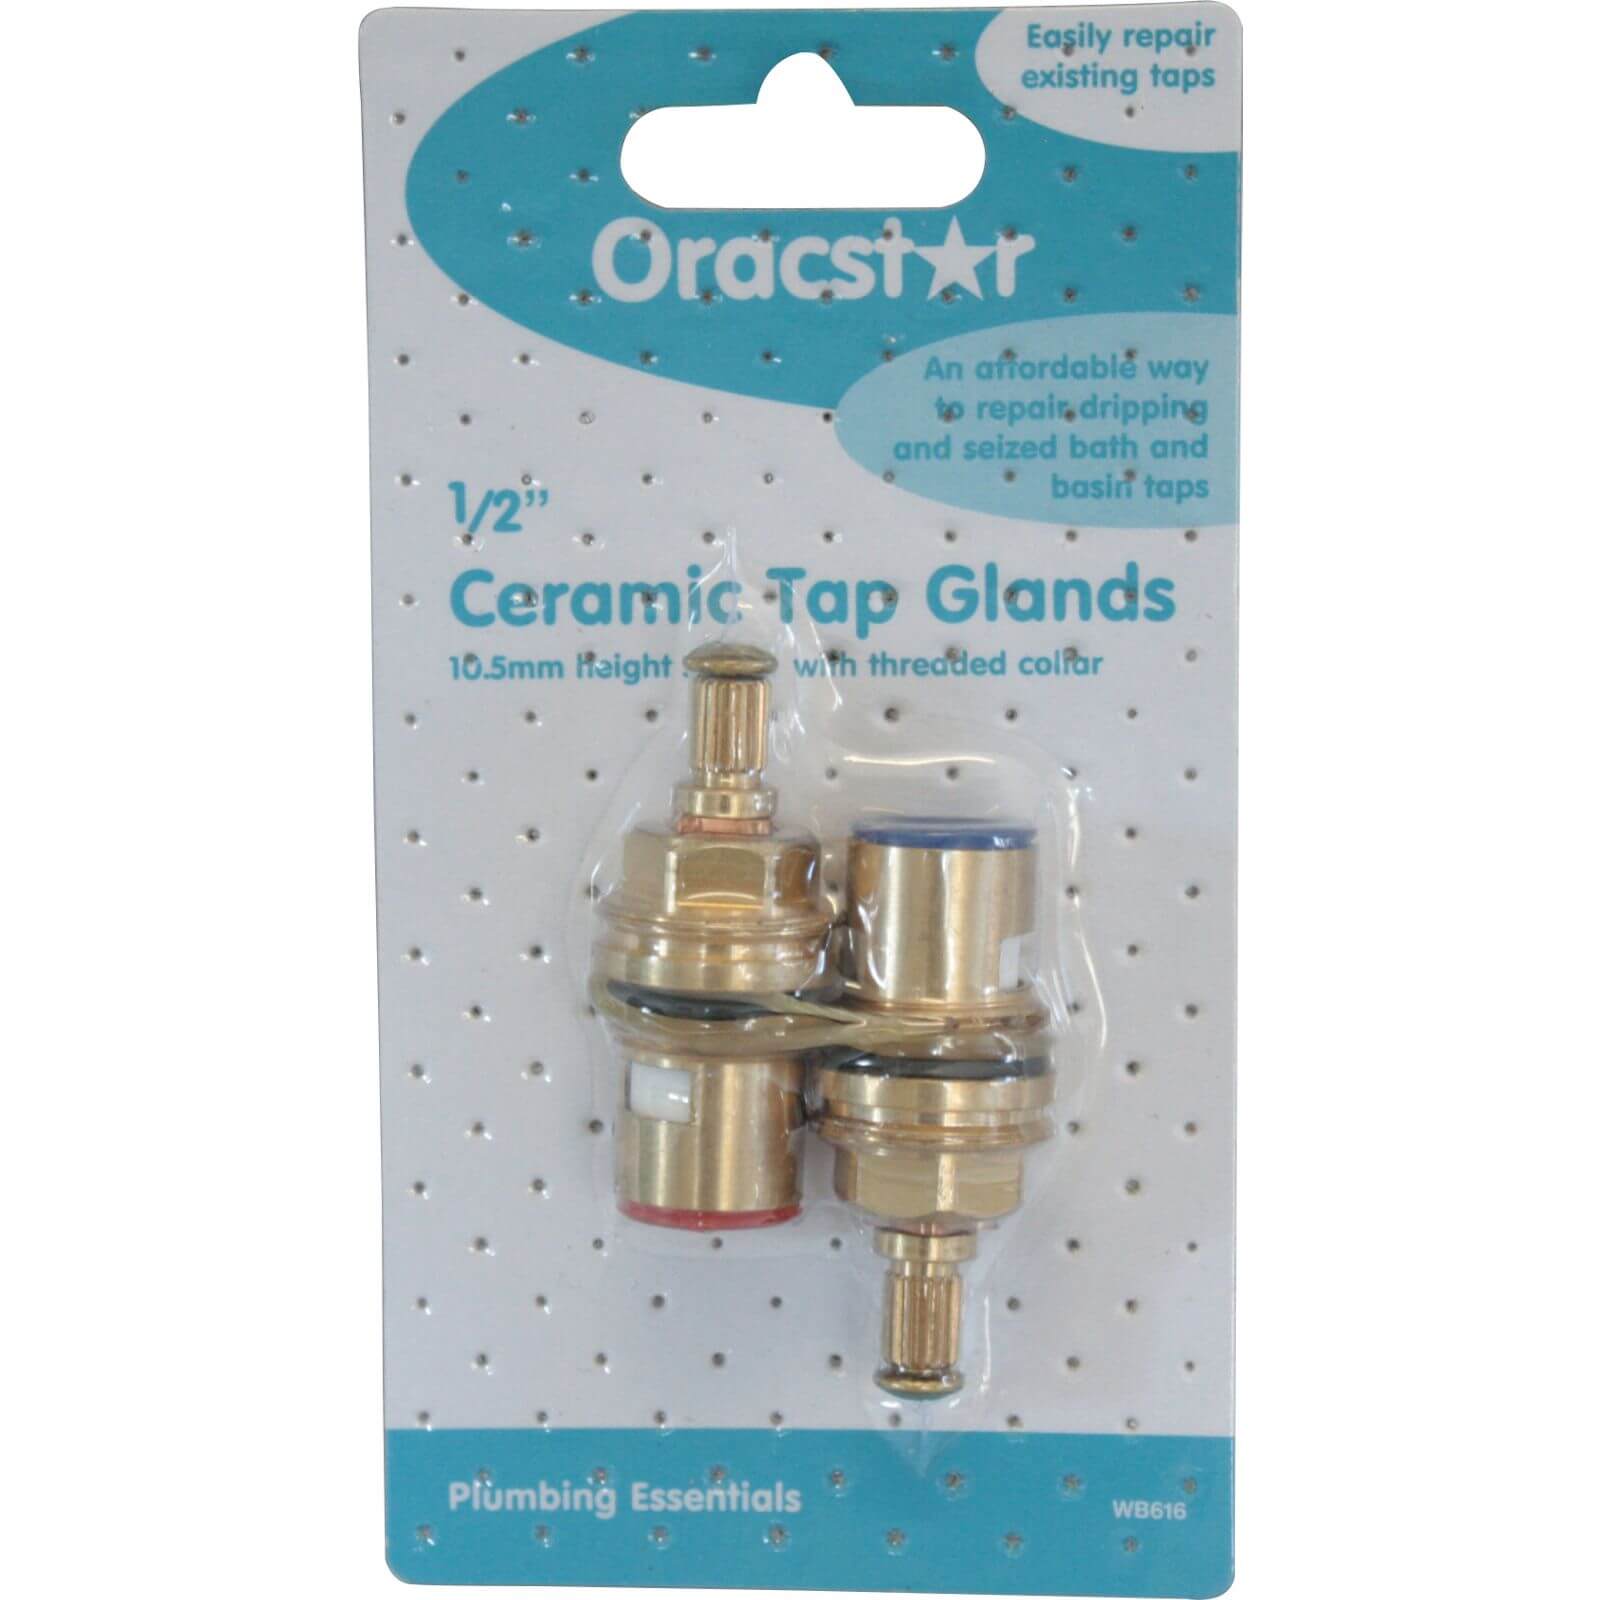 Oracstar 1/2 inch Ceramic Tap Gland 10.5mm Spline